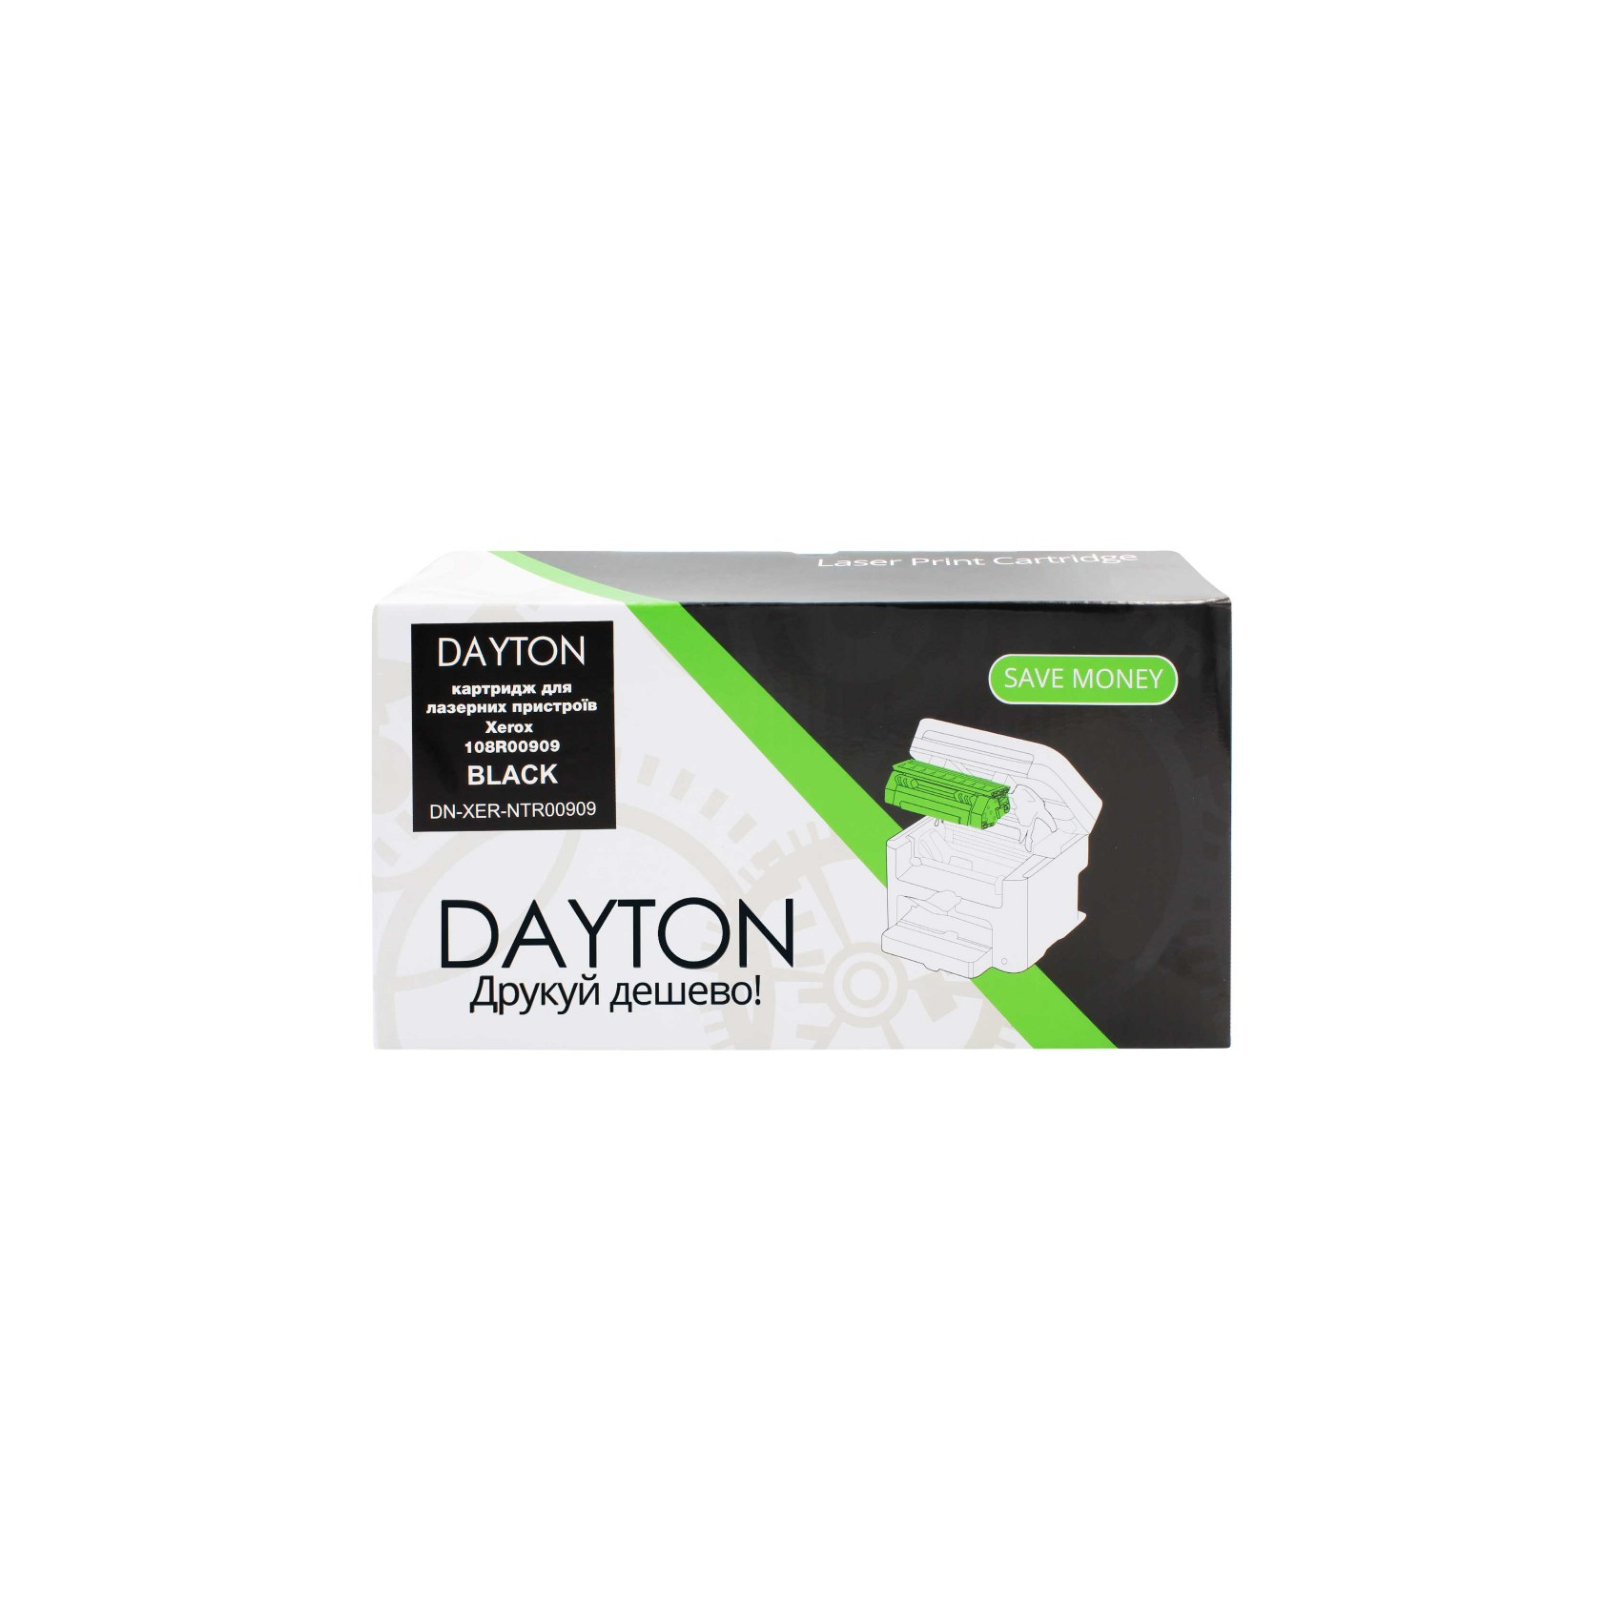 Картридж Dayton Xerox 108R00909 2.5k (DN-XER-NTR00909)